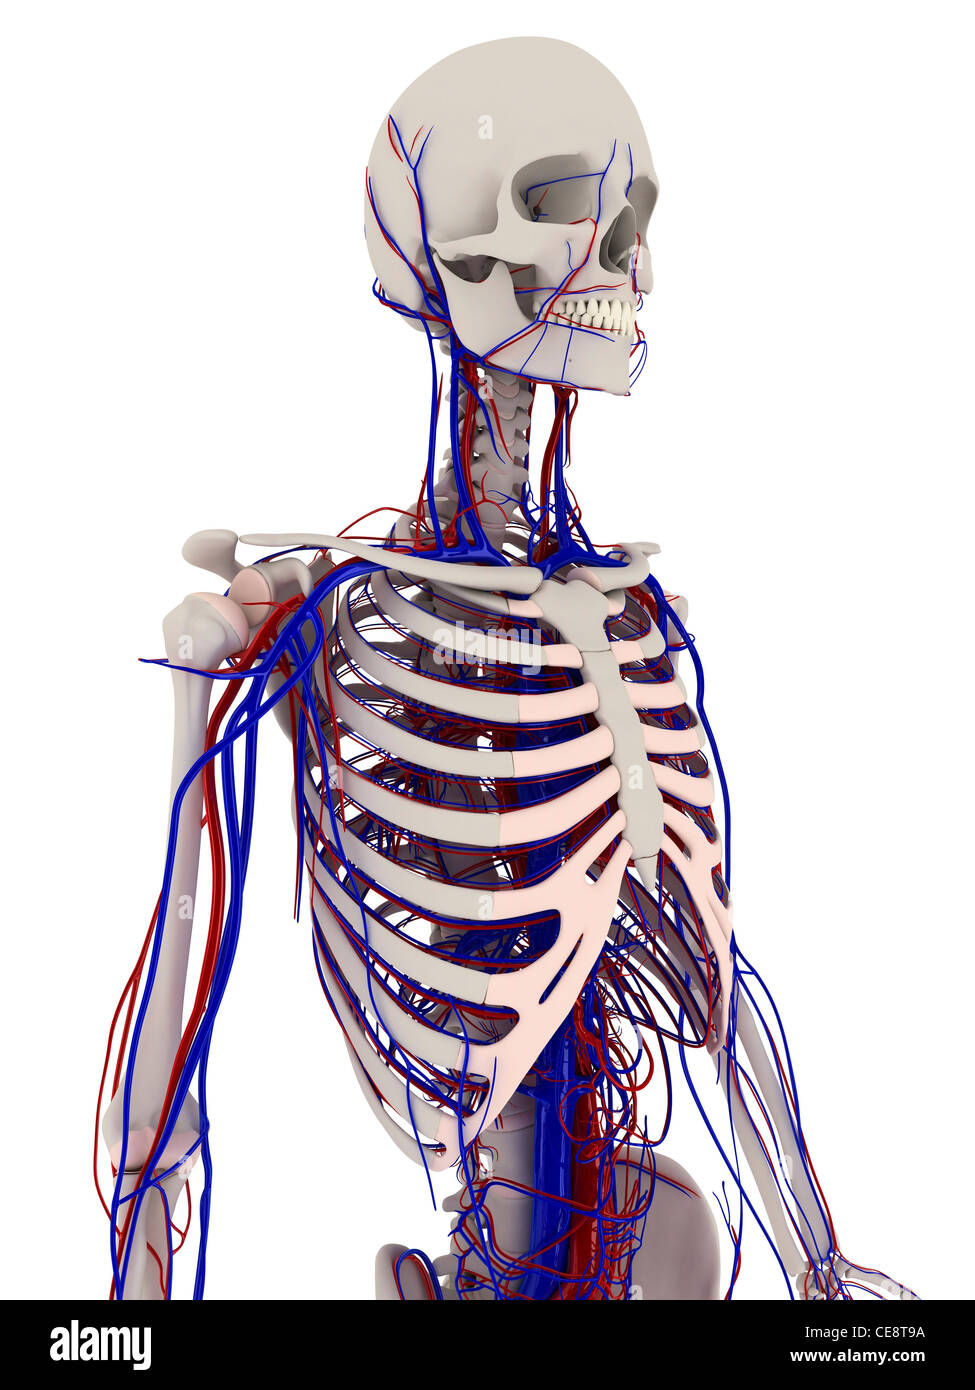 Anatomie Des Menschen Computer Grafik Zeigt Die Knochen Und Herz Kreislauf System Stockfotografie Alamy